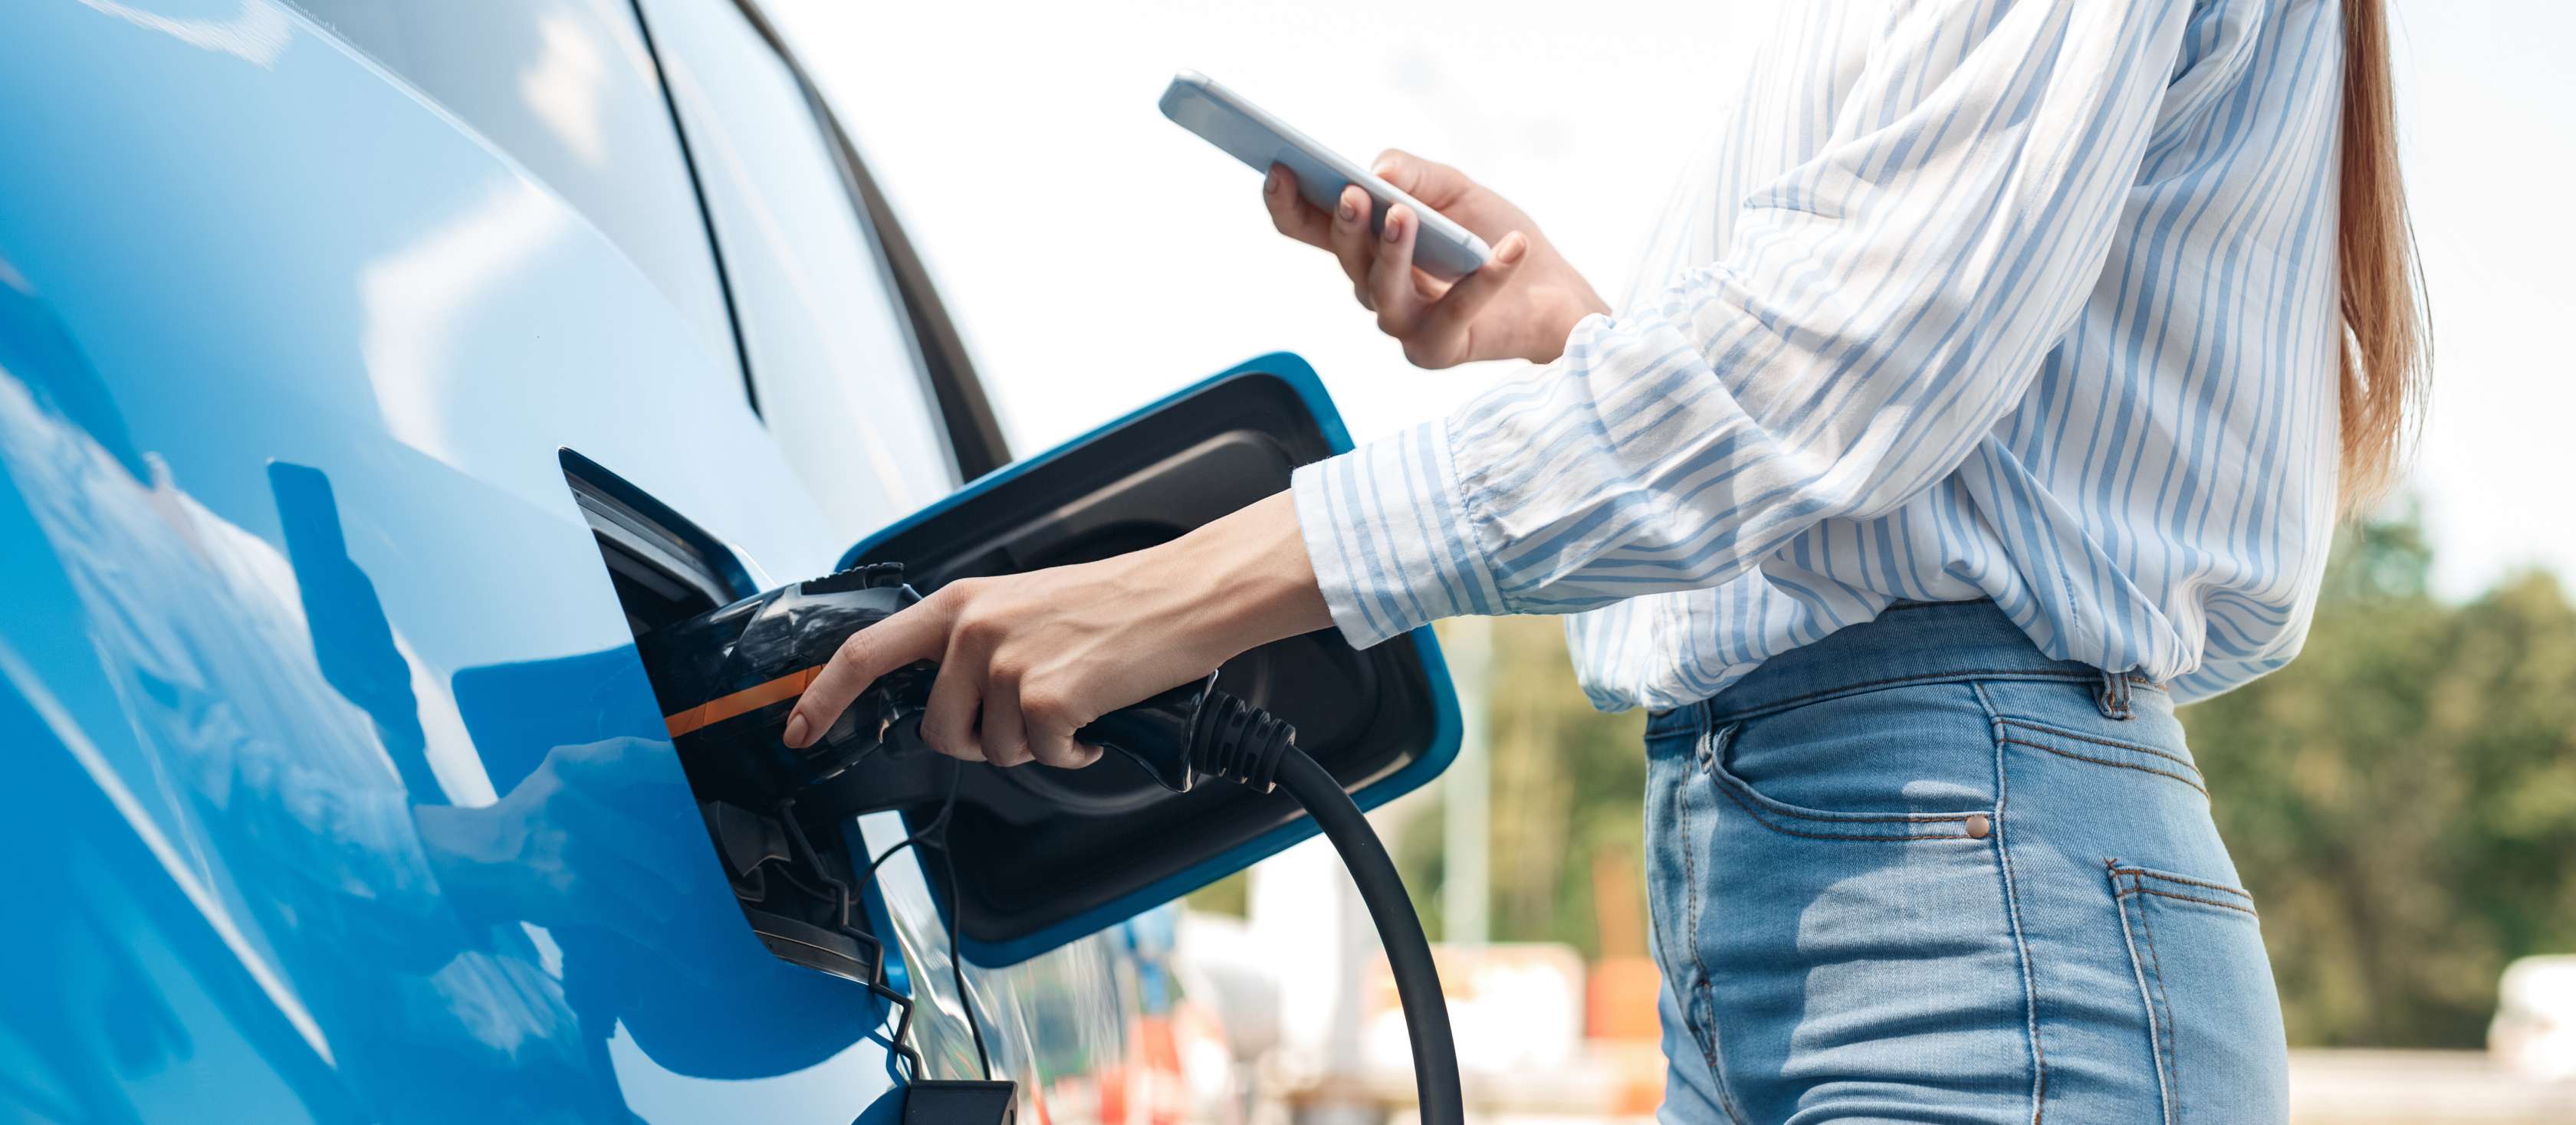 E-Auto laden Versicherung: Frau mit Smartphone in der Hand befestigt Ladekabel an Ladebuchse eines blauen E-Autos